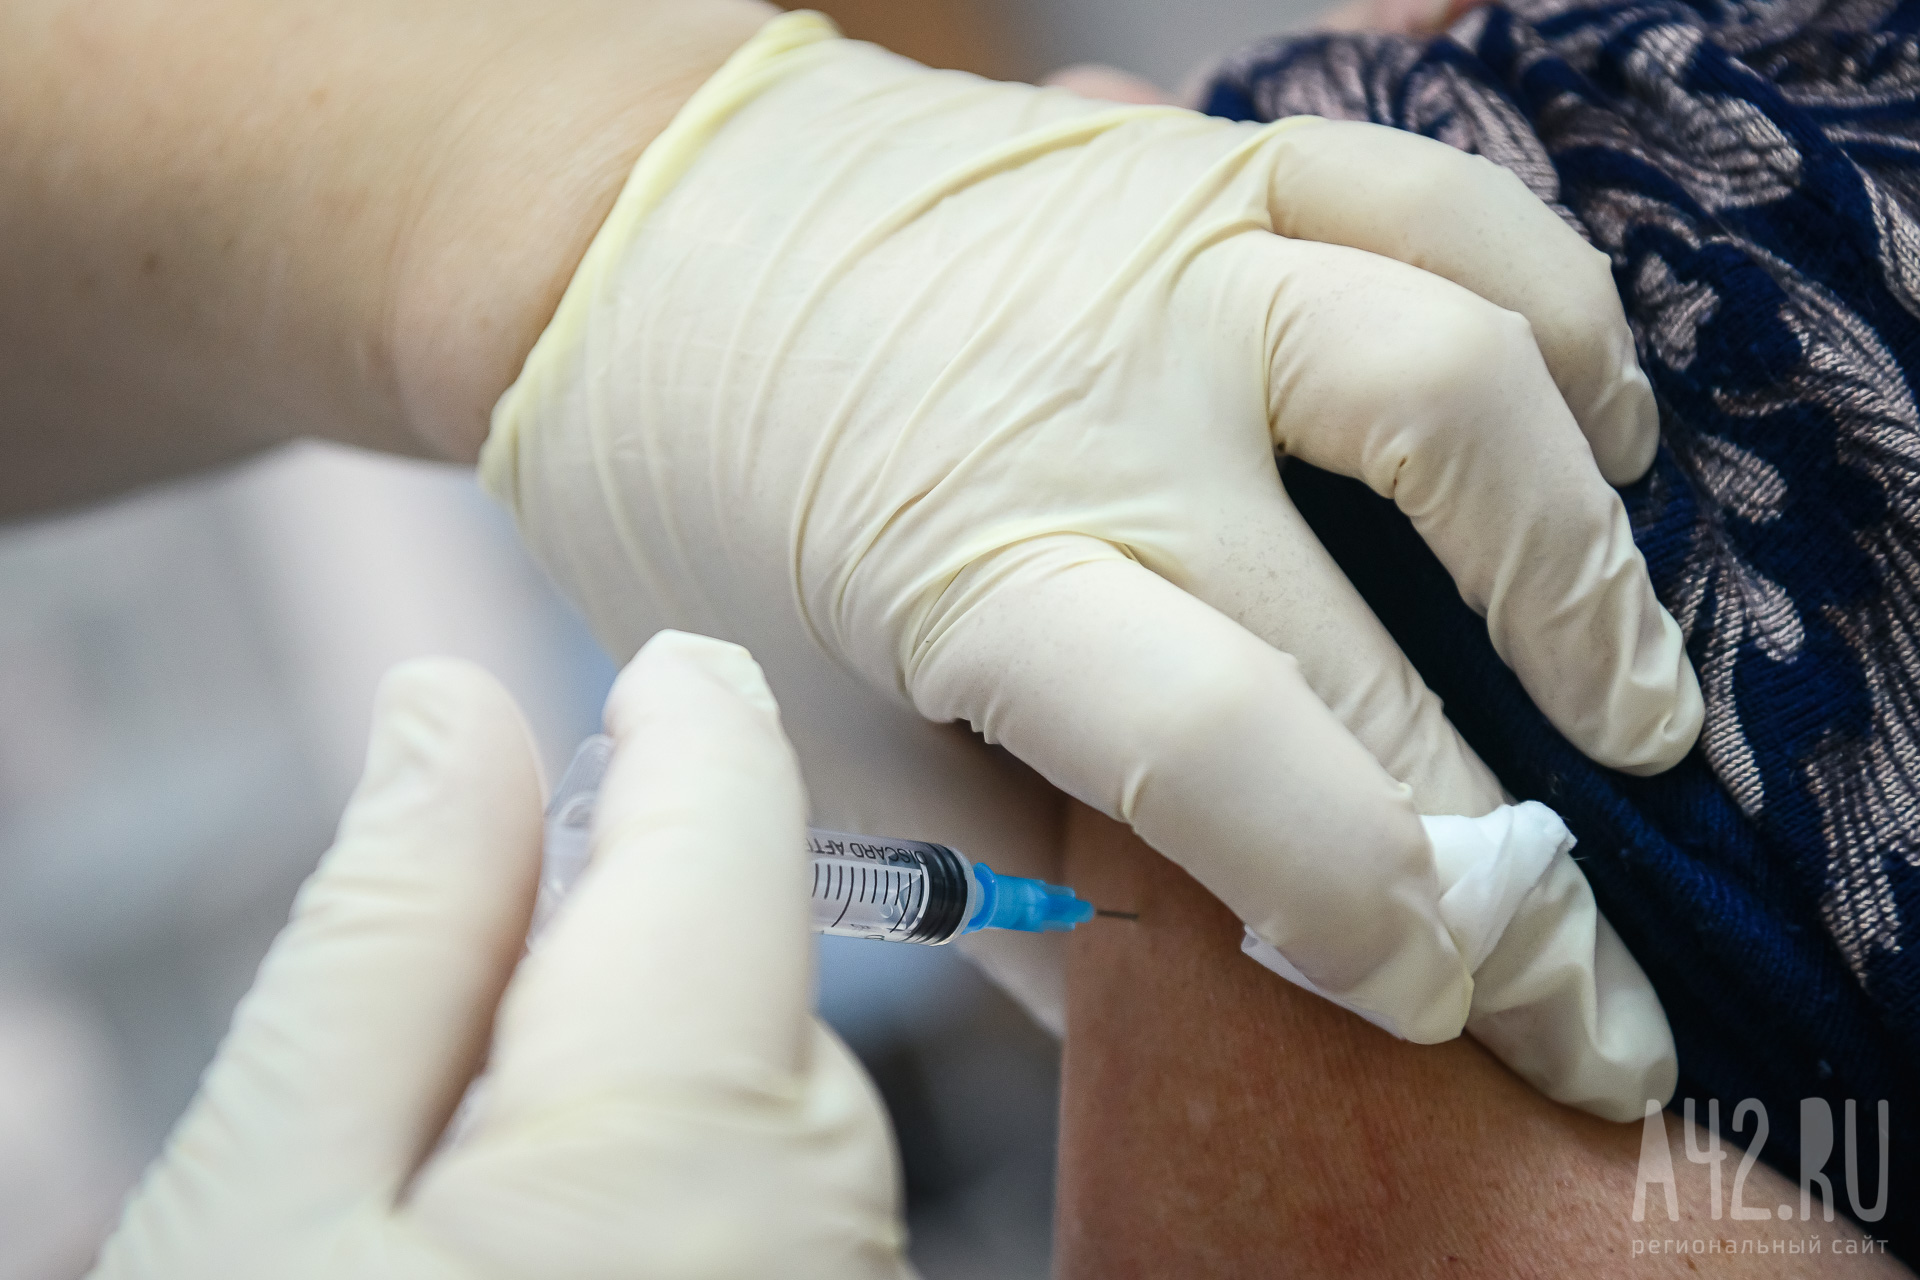 Терапевт Светлаков рассказал, в каких случаях не стоит ставить прививку от гриппа